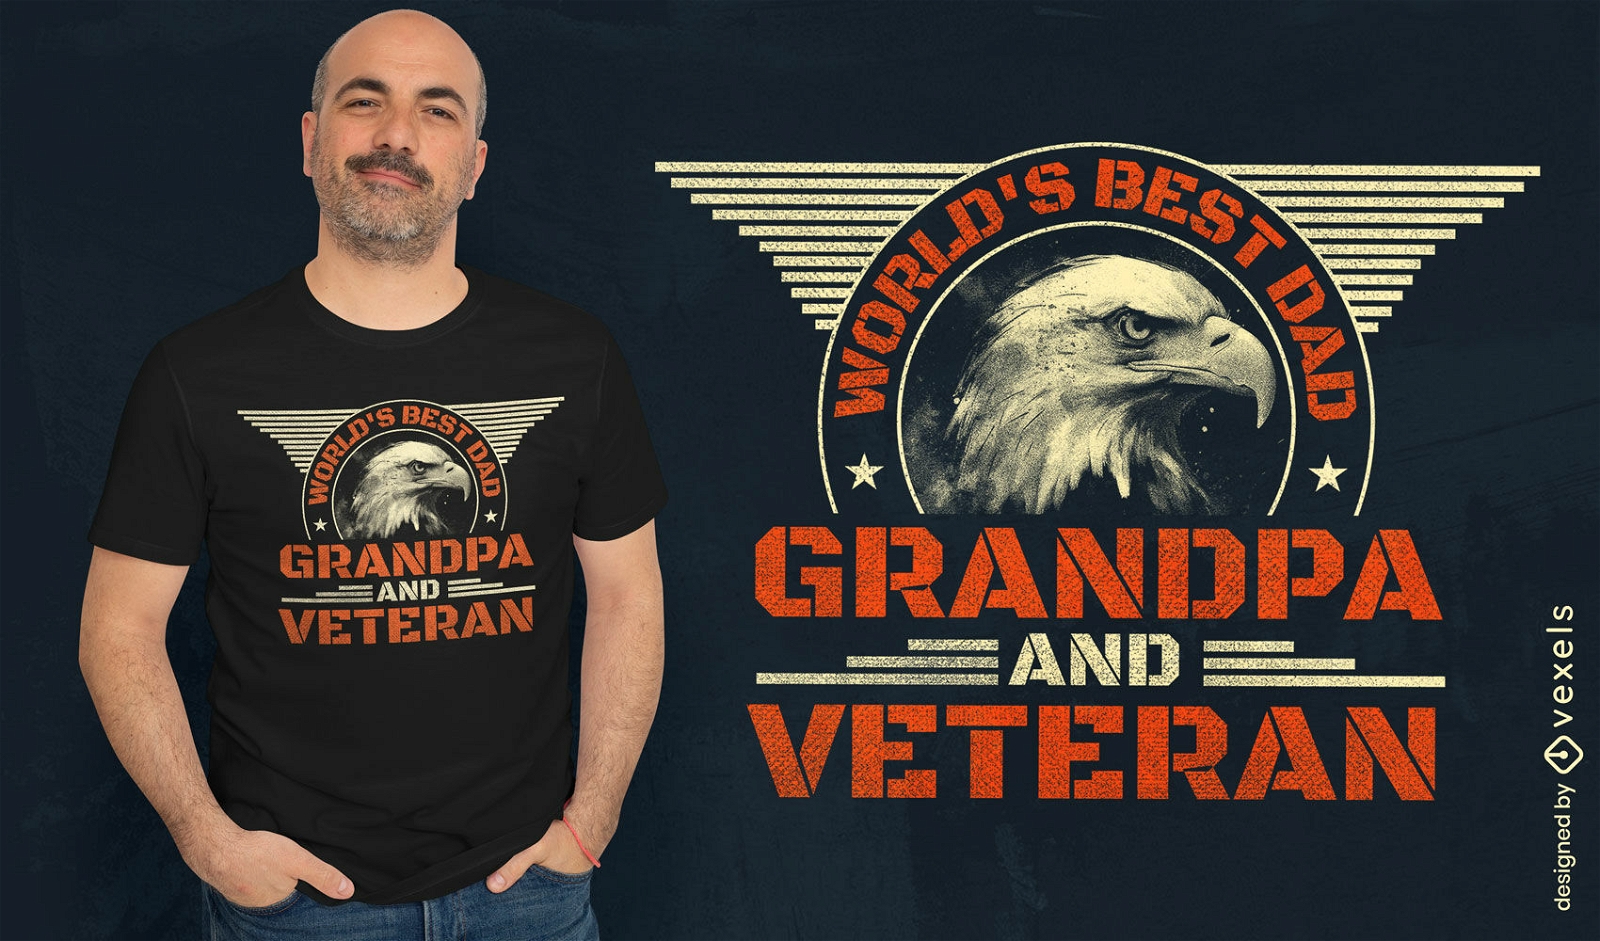 Dise?o de camiseta de abuelo y veterano.